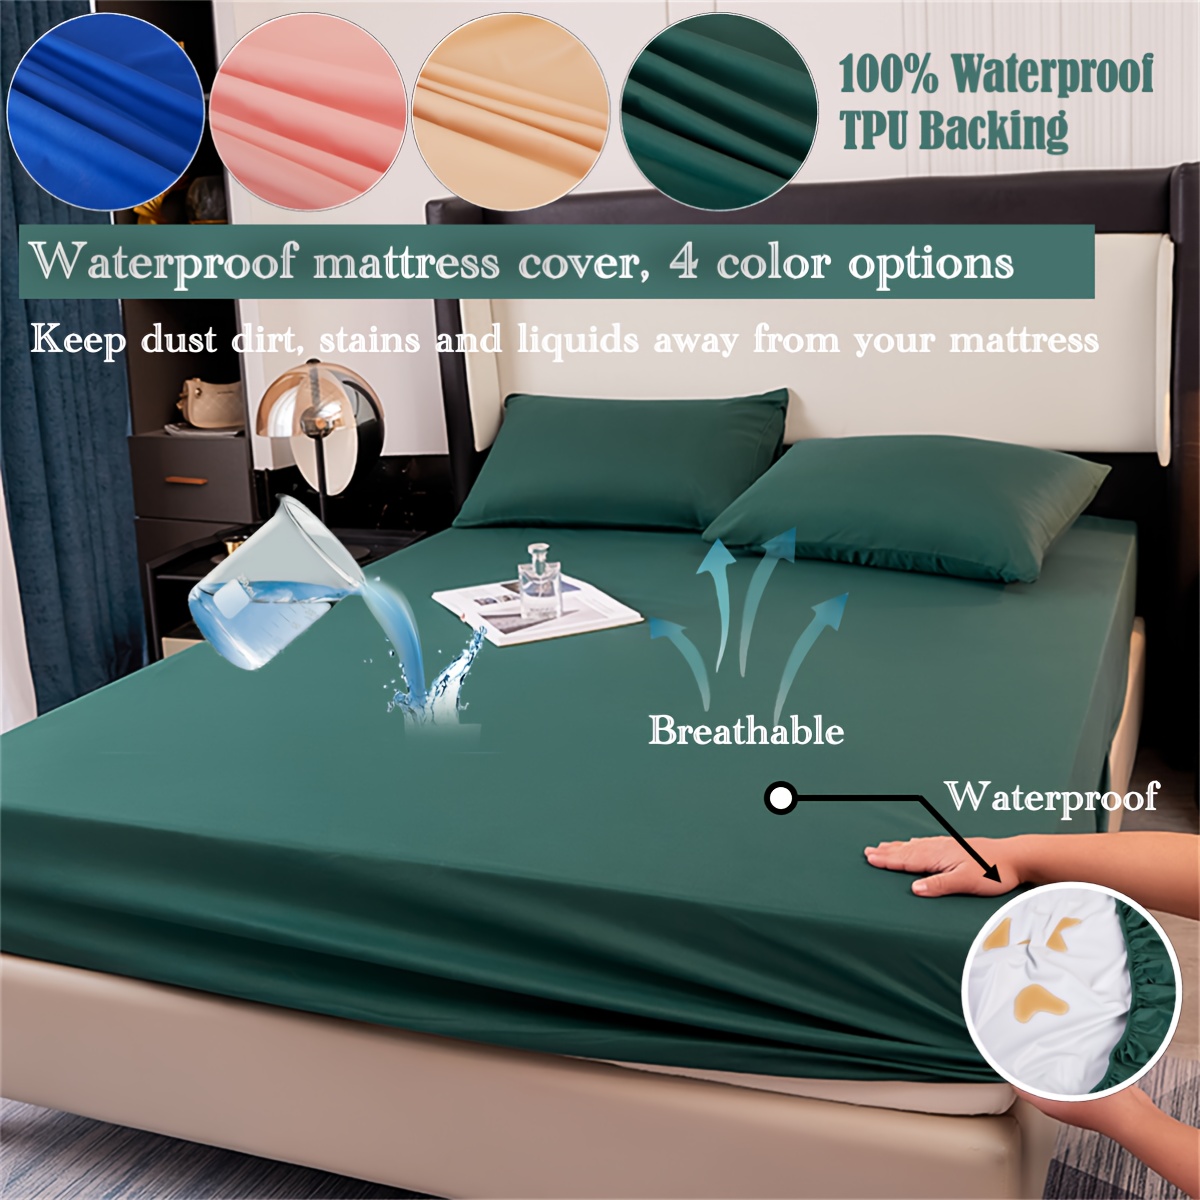 VitaliSpa protector de colchón blanco somier de cama 180 x 200 cm